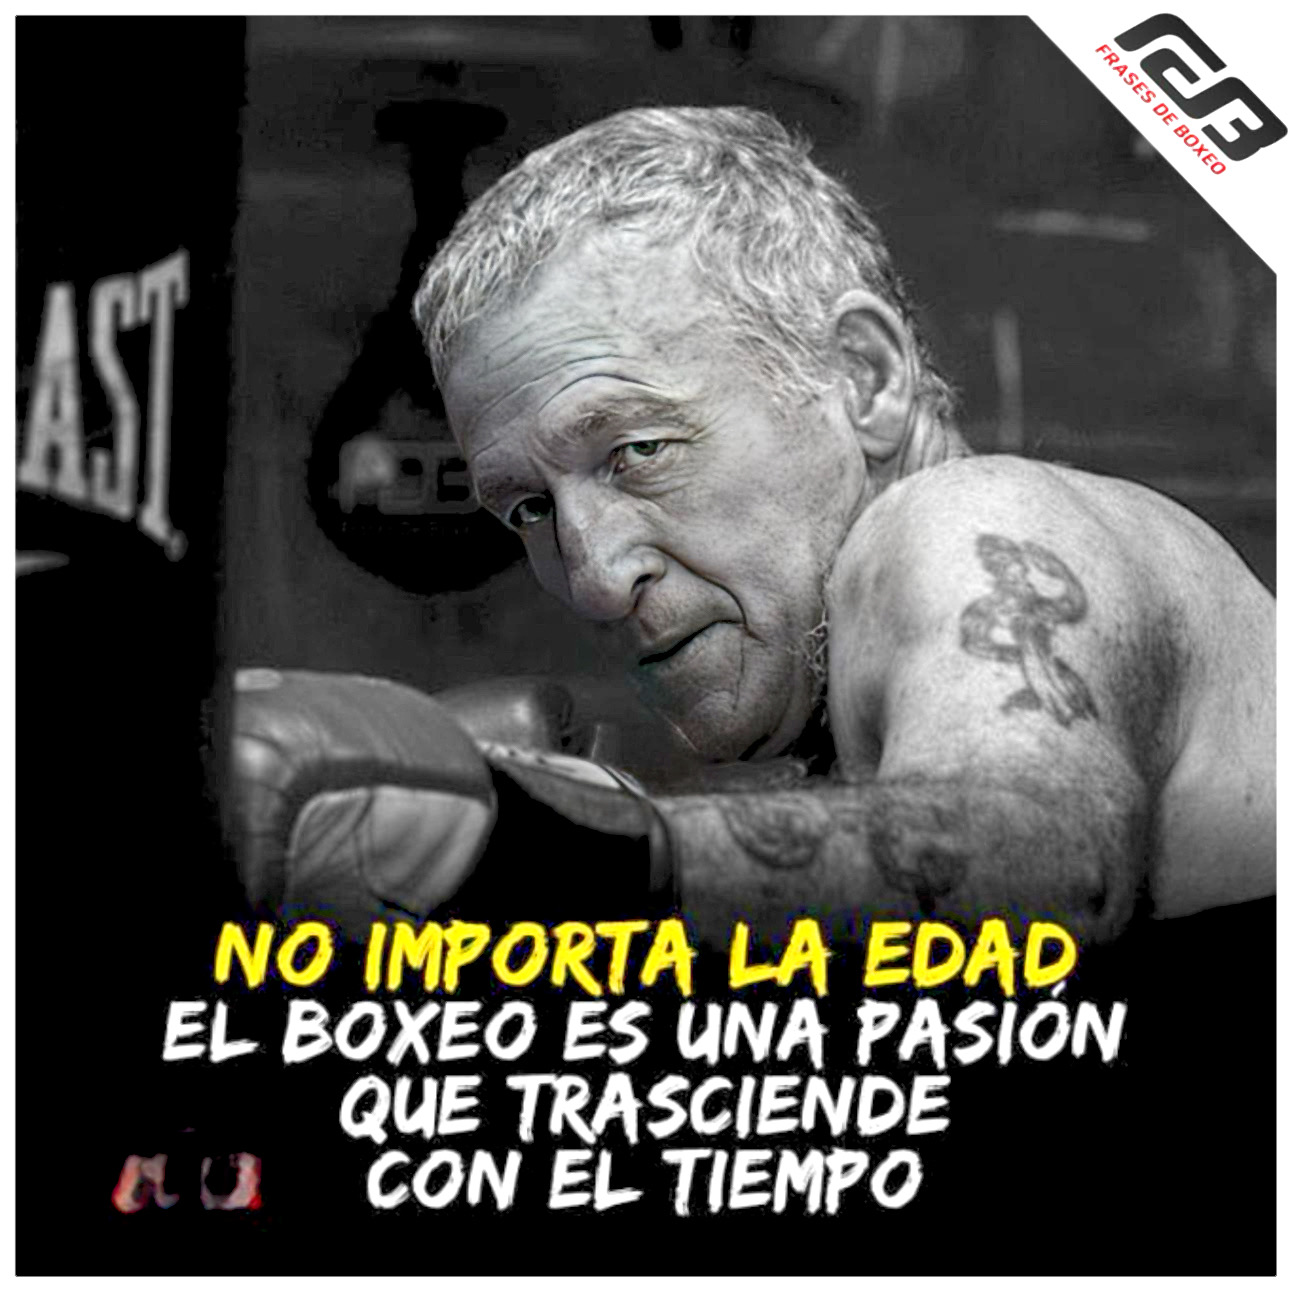 "No hay edad para sentir pasión por el boxeo. (Frases de Boxeo).